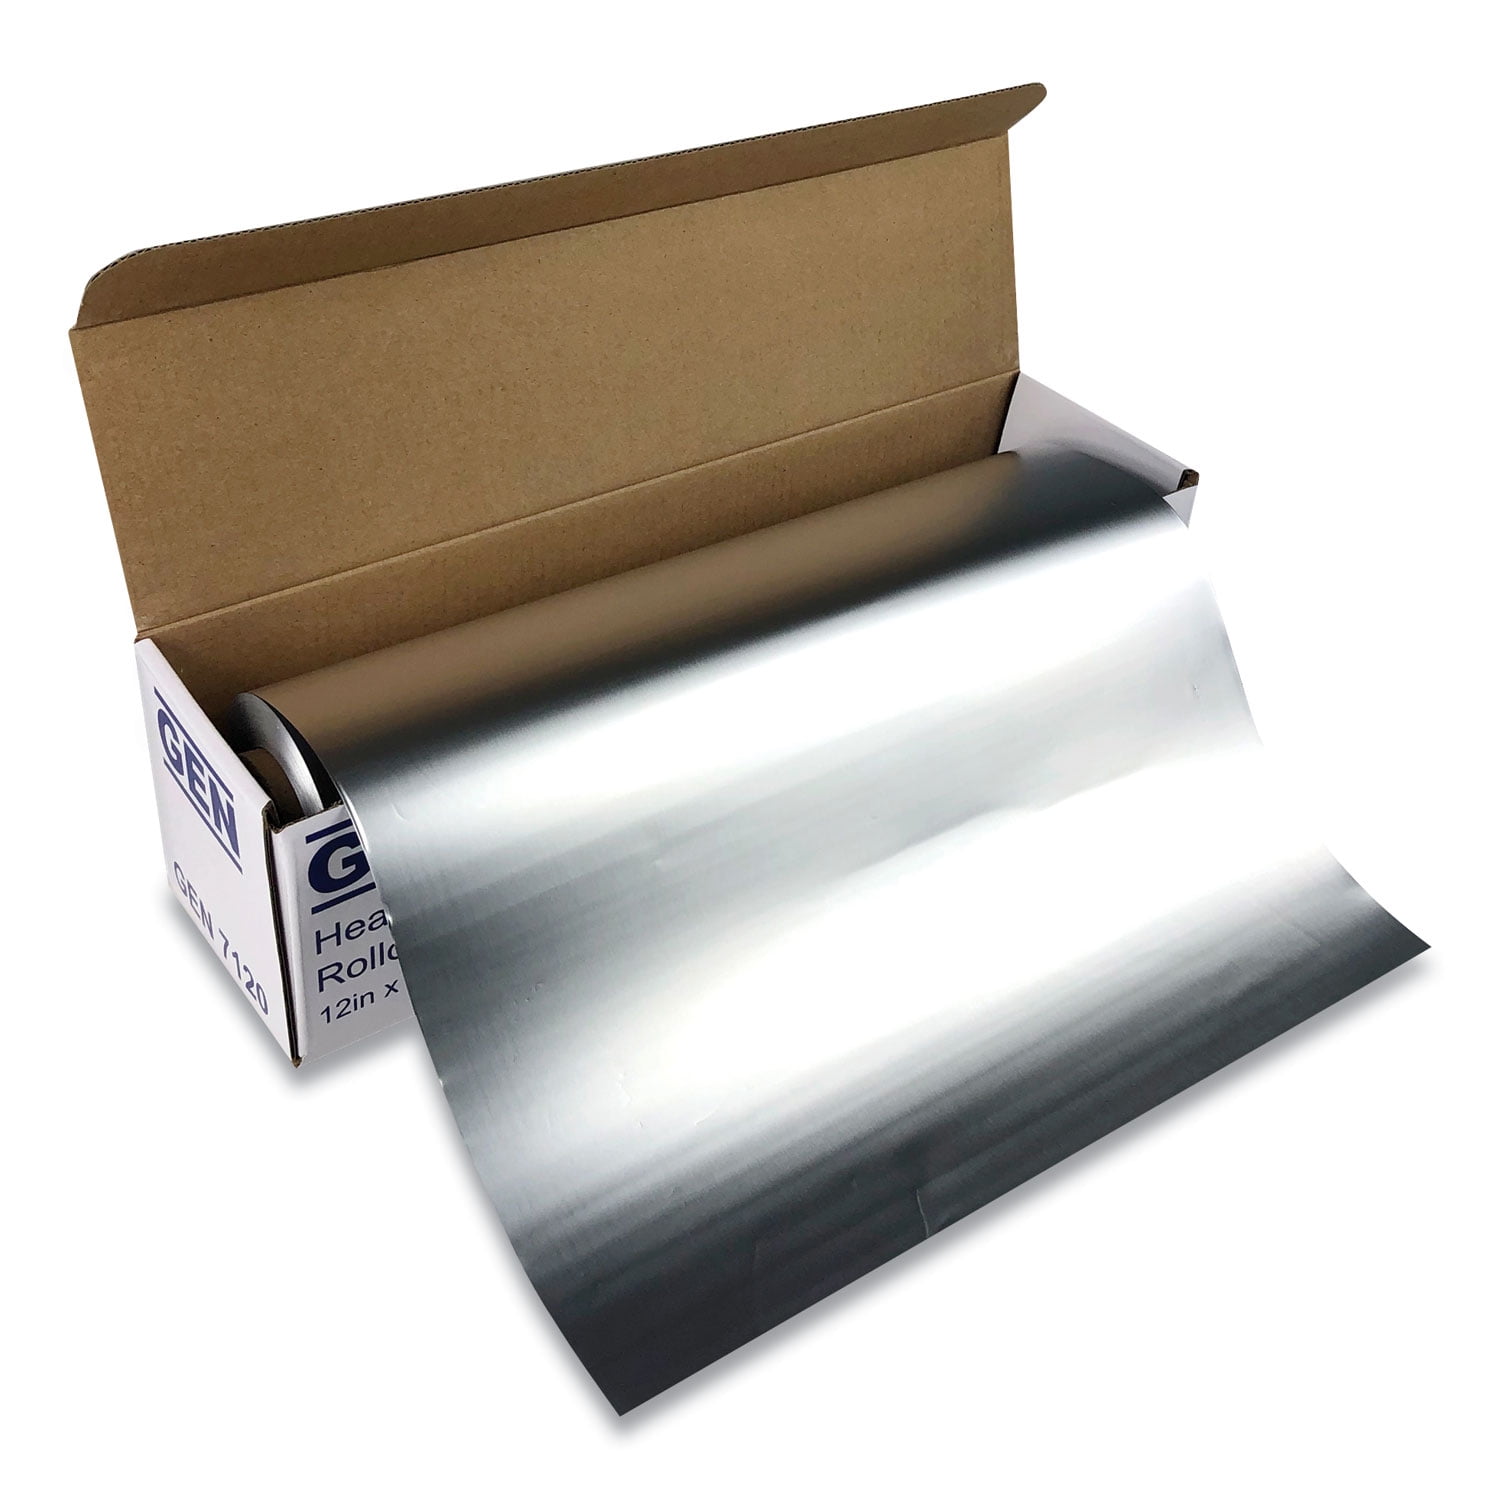 GEN Heavy-Duty Aluminum Foil Roll, 12 x 500 ft -GEN7120 